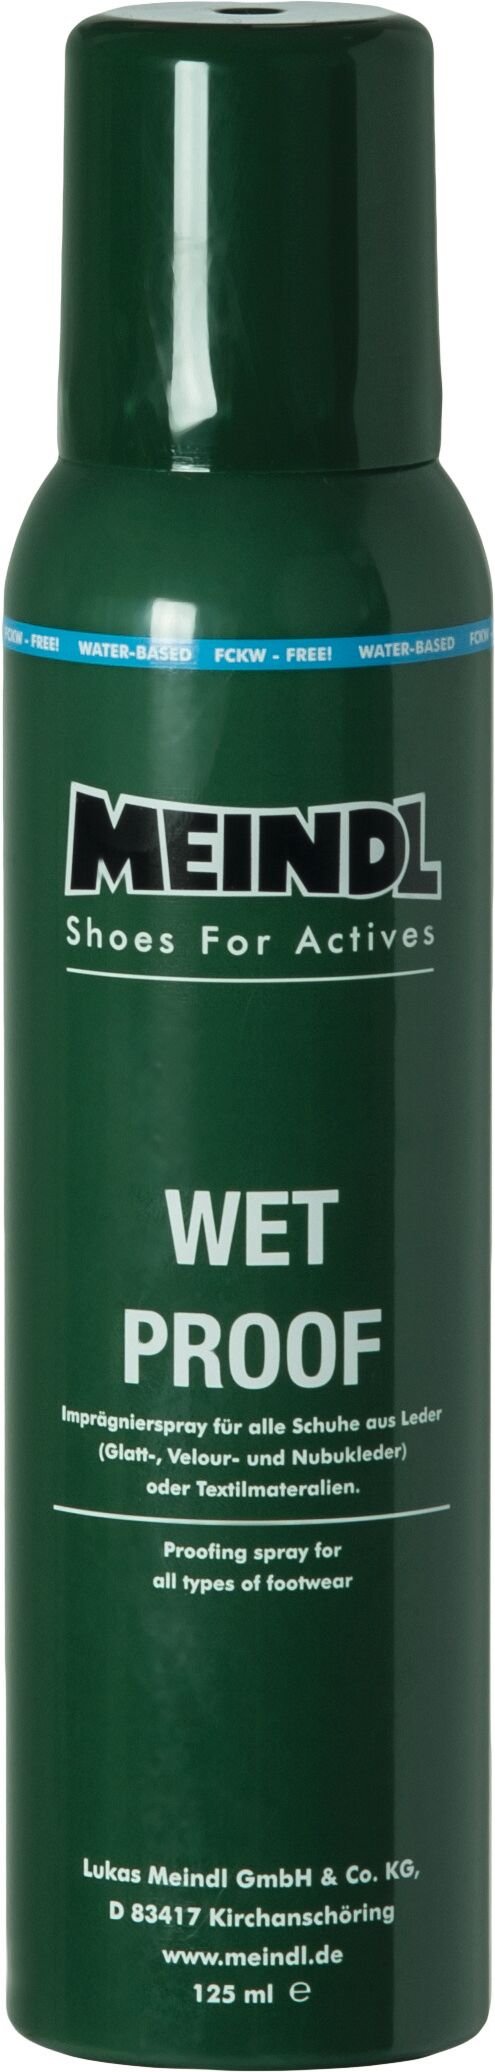 Meindl Wet-Proof